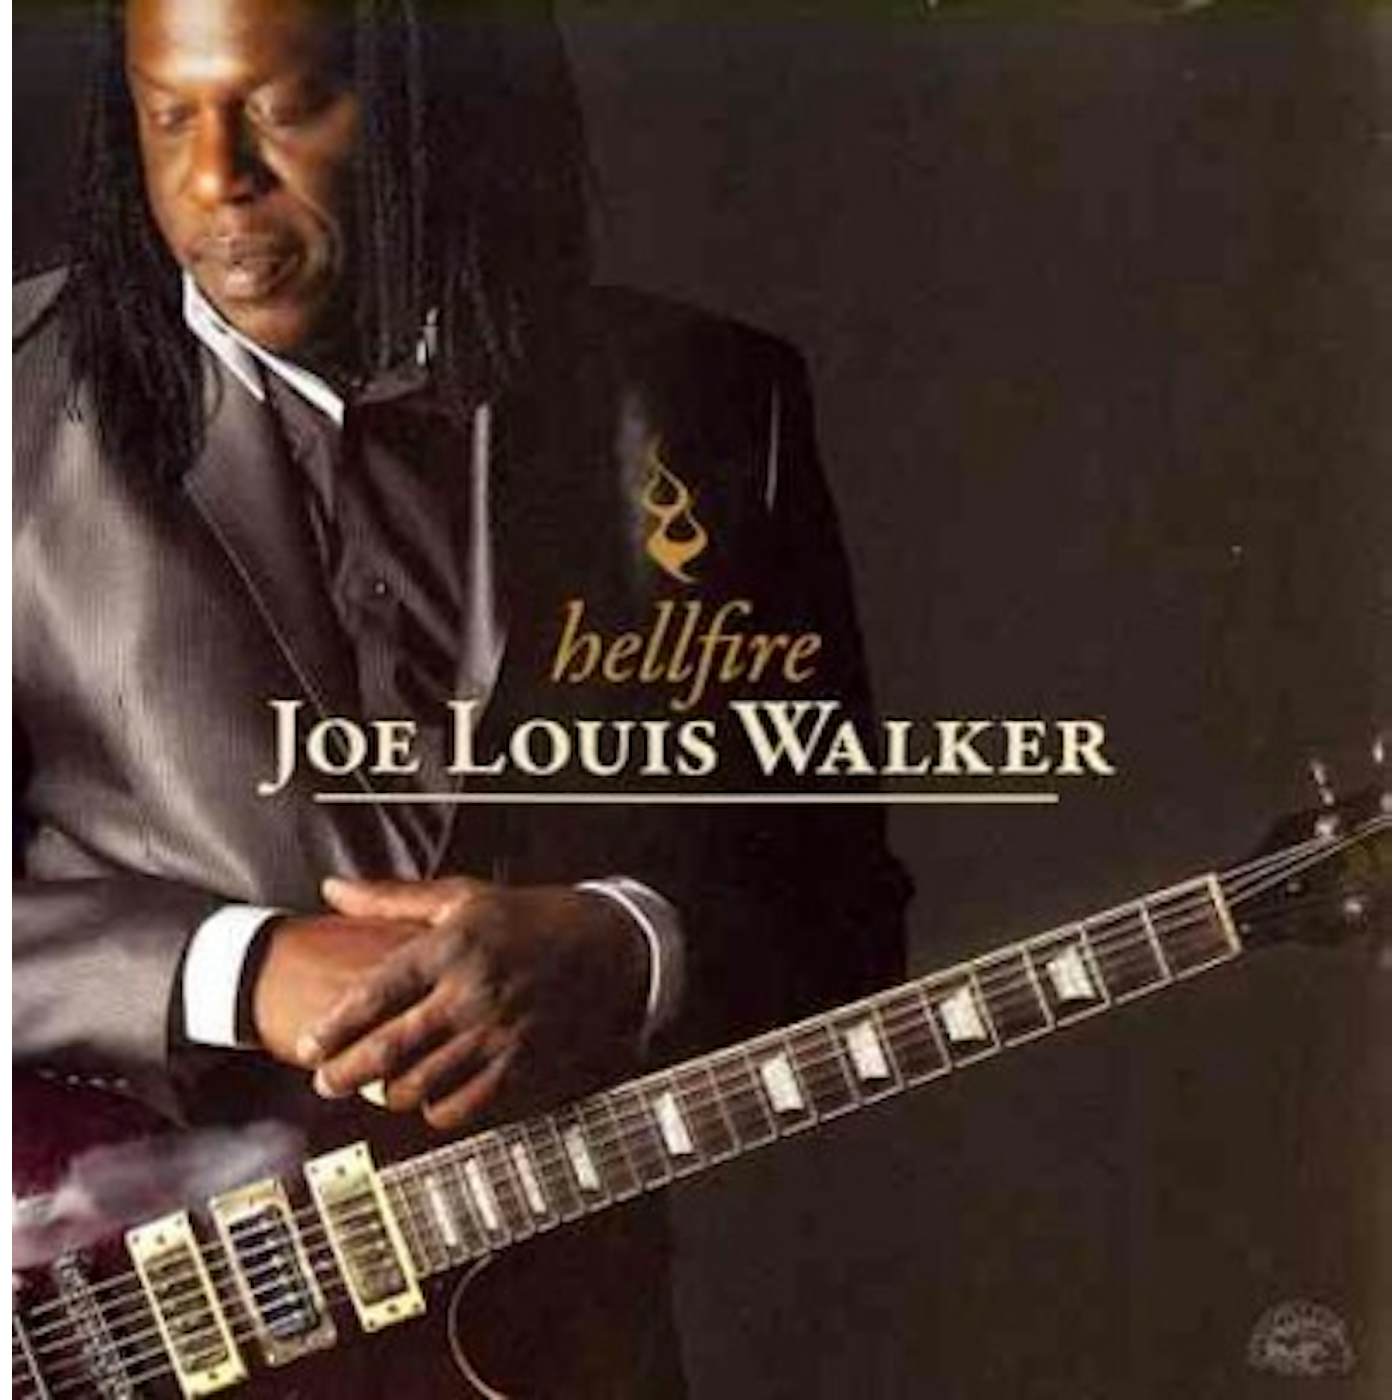 Joe Louis Walker Hellfire CD